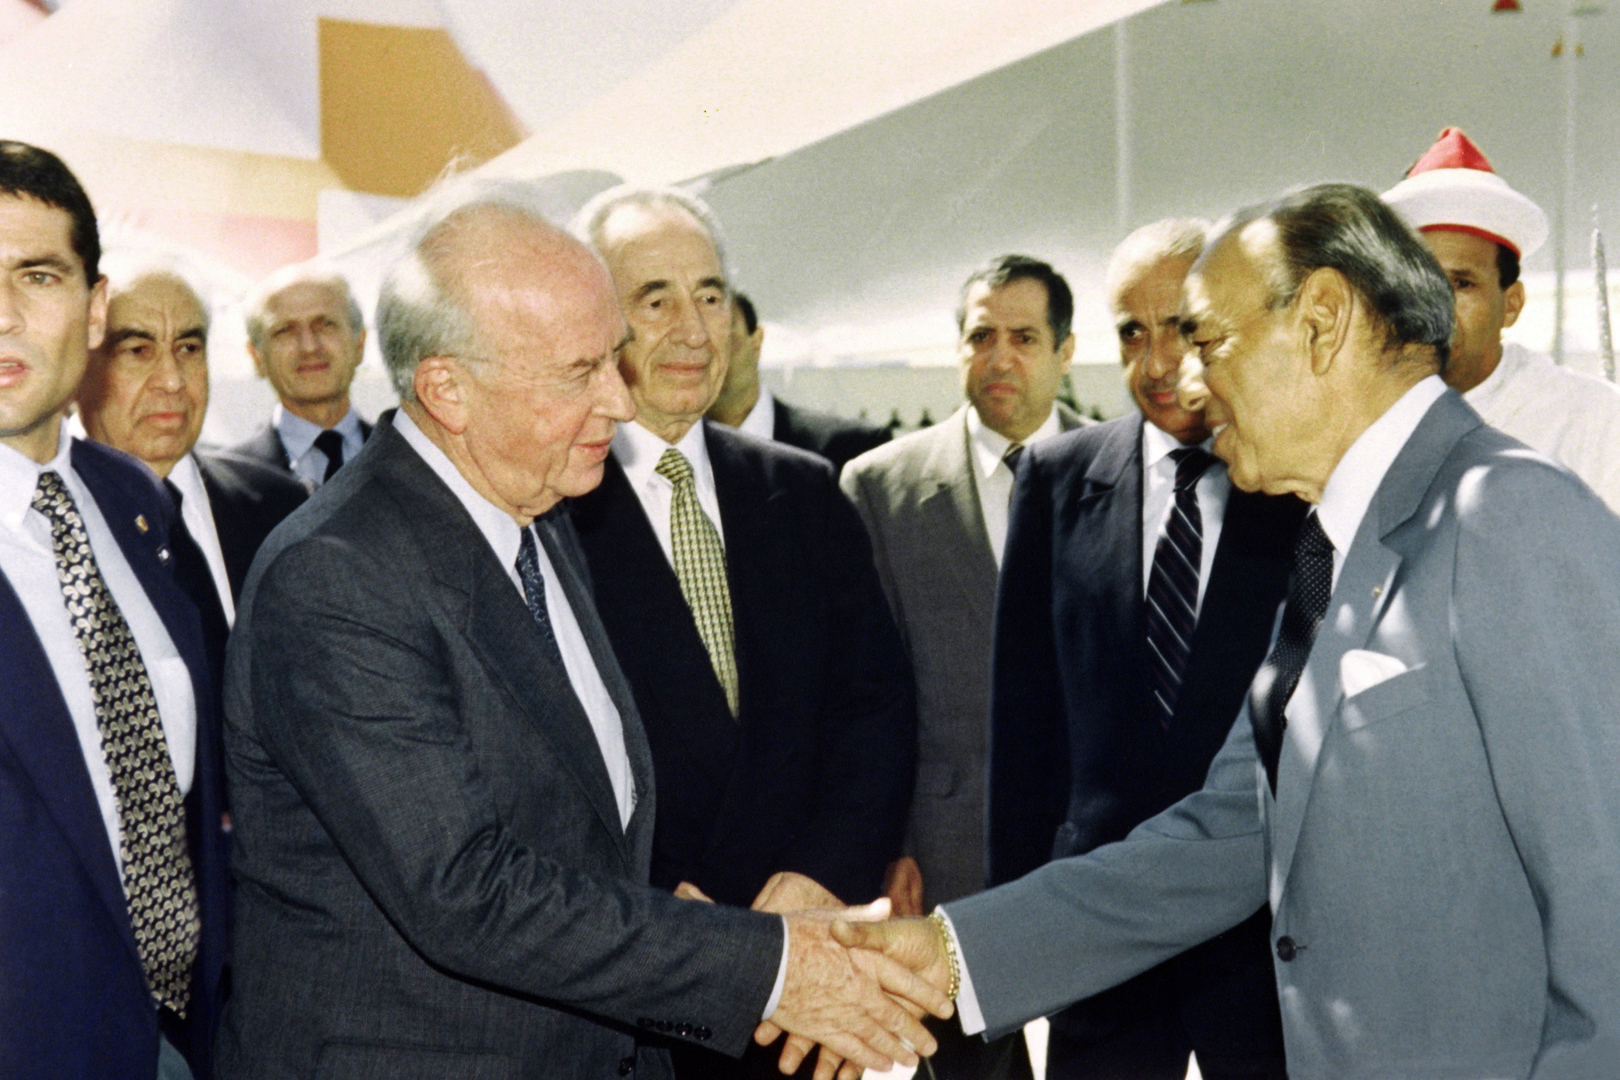 الأحداث المغربية: حين اقترح الحسن الثاني منح إسرائيل عضوية جامعة الدول العربية